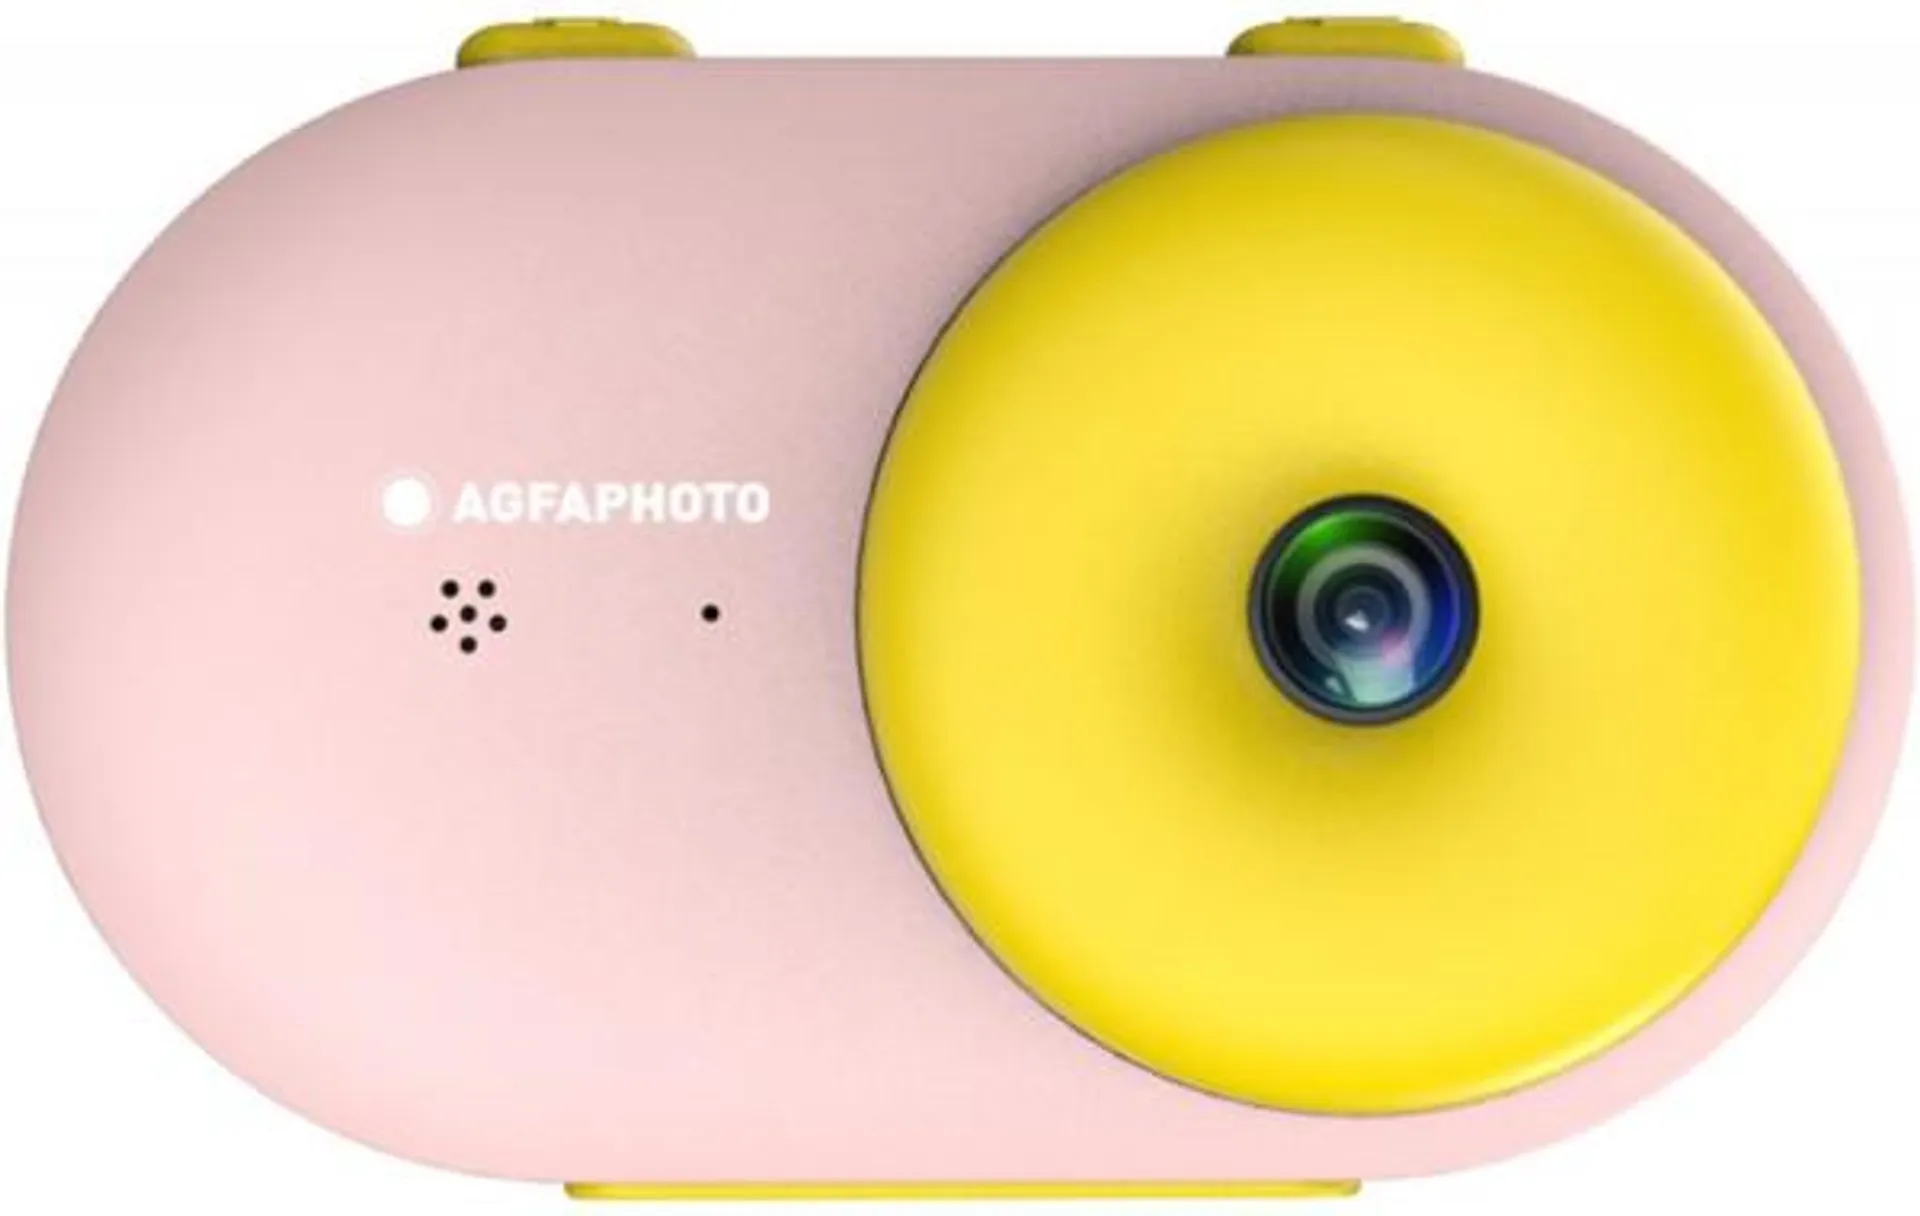 Agfaphoto Realikids Water Proof Digitale Kompaktkamera pink